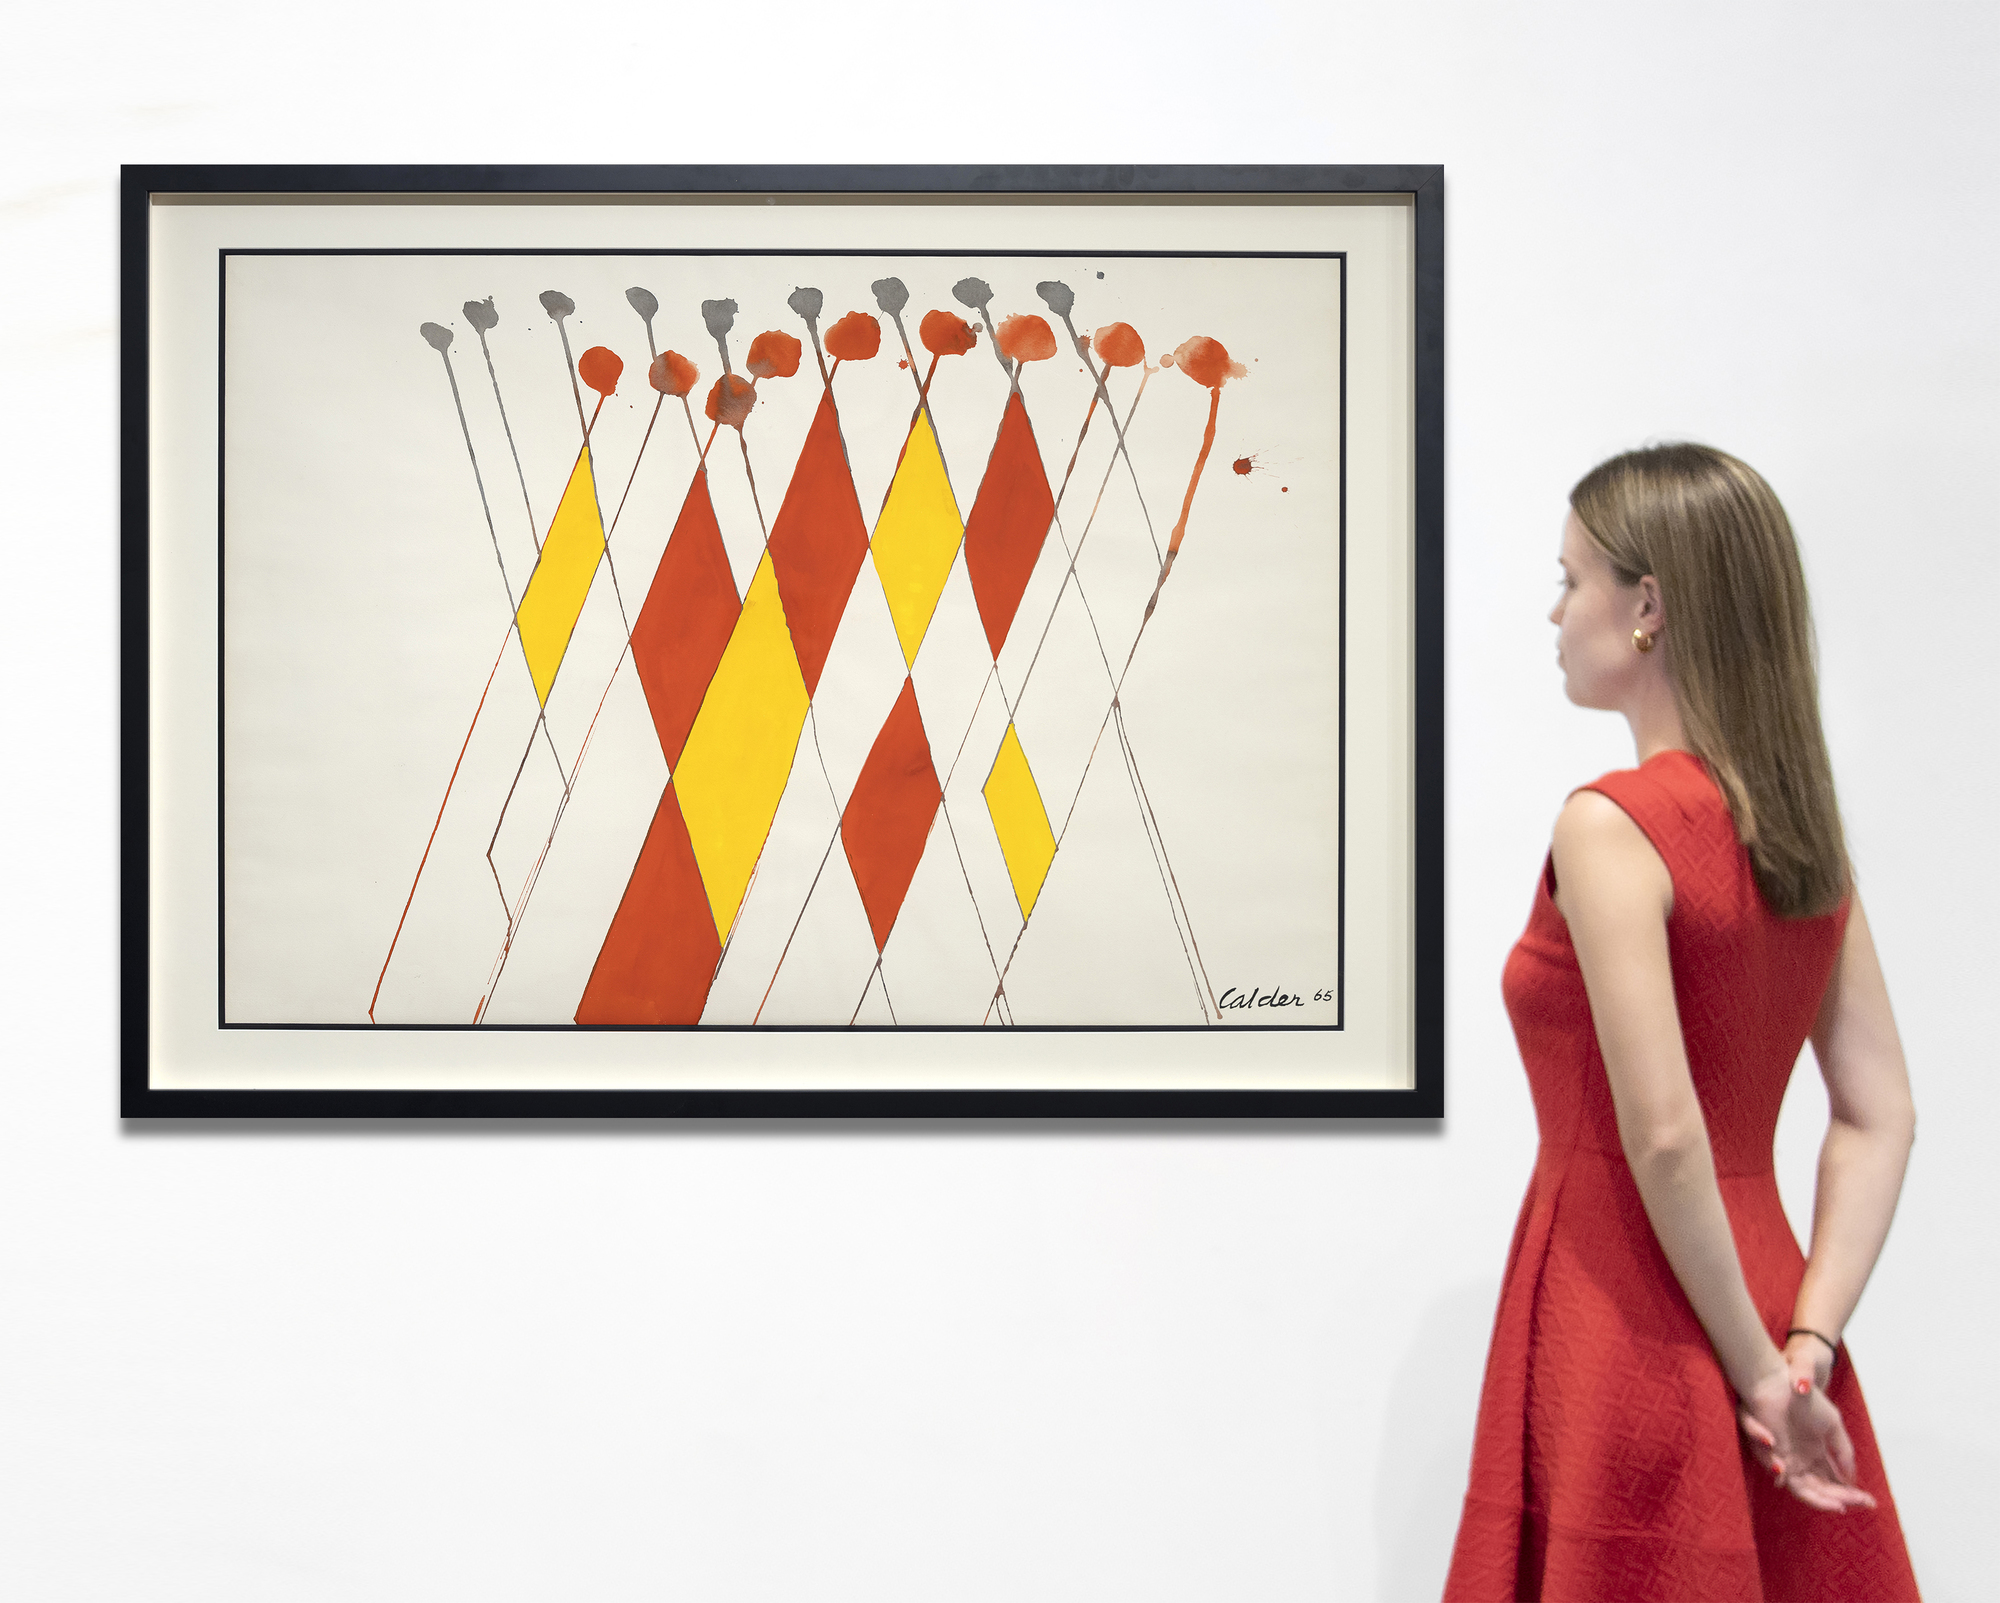 &quot;Wigwam rouge et jaune&quot;, una cautivadora pintura al gouache de Alexander Calder, es una vibrante exploración del diseño y el color. Dominada por un entramado de líneas diagonales que se cruzan cerca de su cúspide, la composición destila un equilibrio dinámico. Calder introduce un elemento de capricho con rombos rojos y amarillos, que infunden a la pieza un carácter lúdico y crean un ambiente festivo. Las bolas rojas en el vértice de las líneas inclinadas a la derecha evocan una impresión caprichosa, mientras que las esferas grises más pequeñas sobre las líneas inclinadas a la izquierda ofrecen contraste y equilibrio. La magistral fusión de simplicidad y elementos de diseño vitales de Calder hace de Wigwam rouge et jaune una delicia visual.